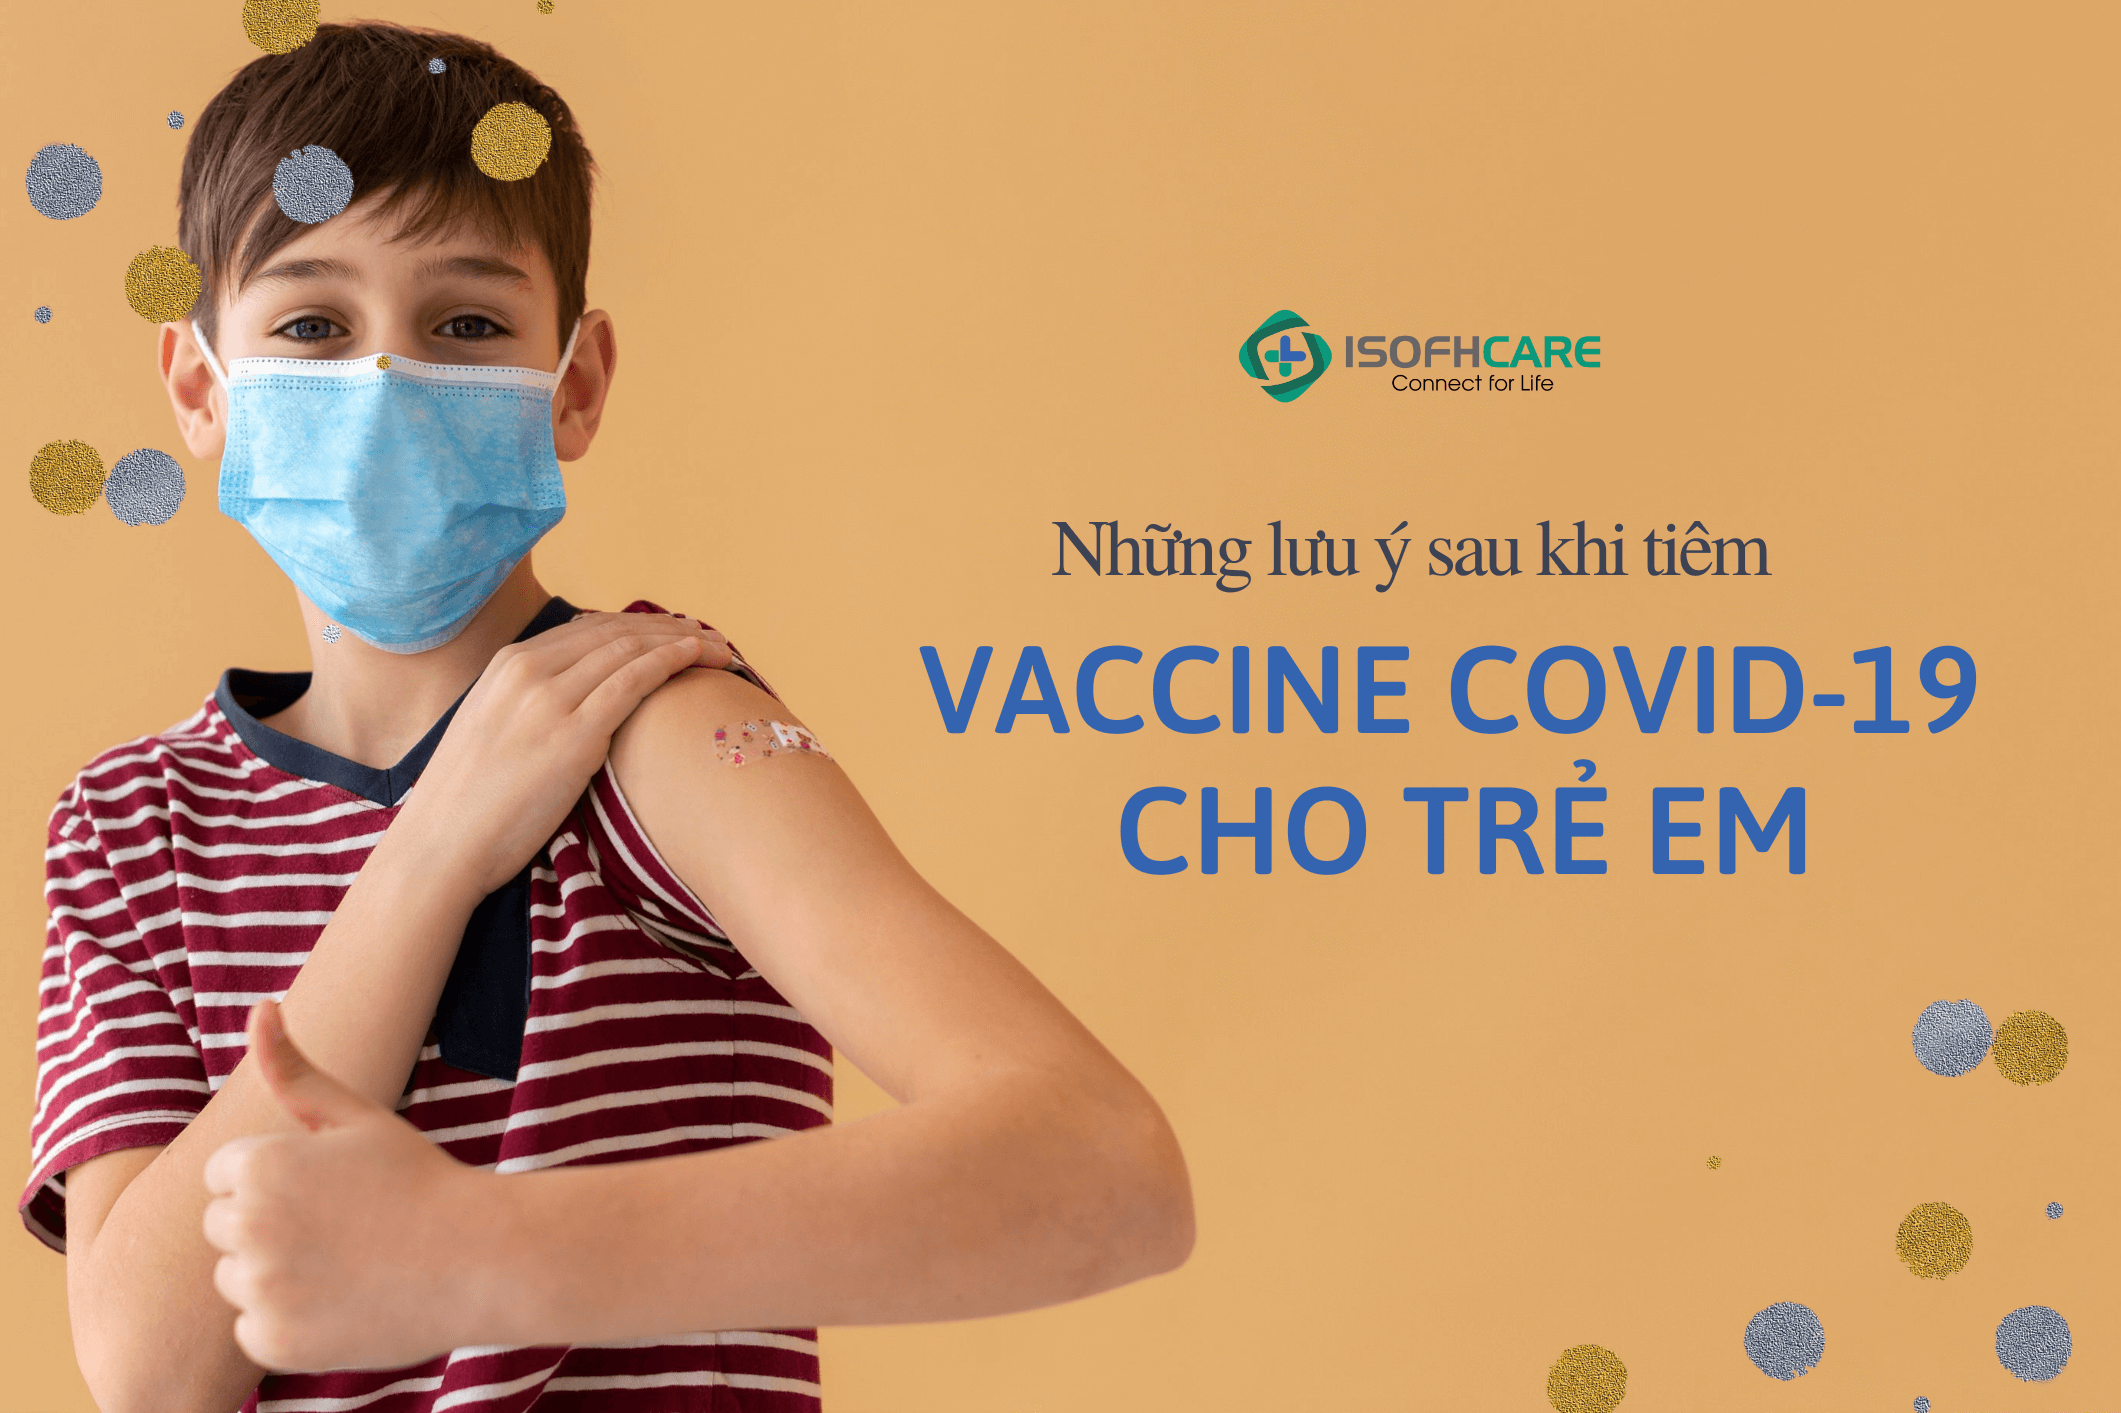 Những lưu ý sau khi tiêm vắc xin phòng Covid-19 cho trẻ em